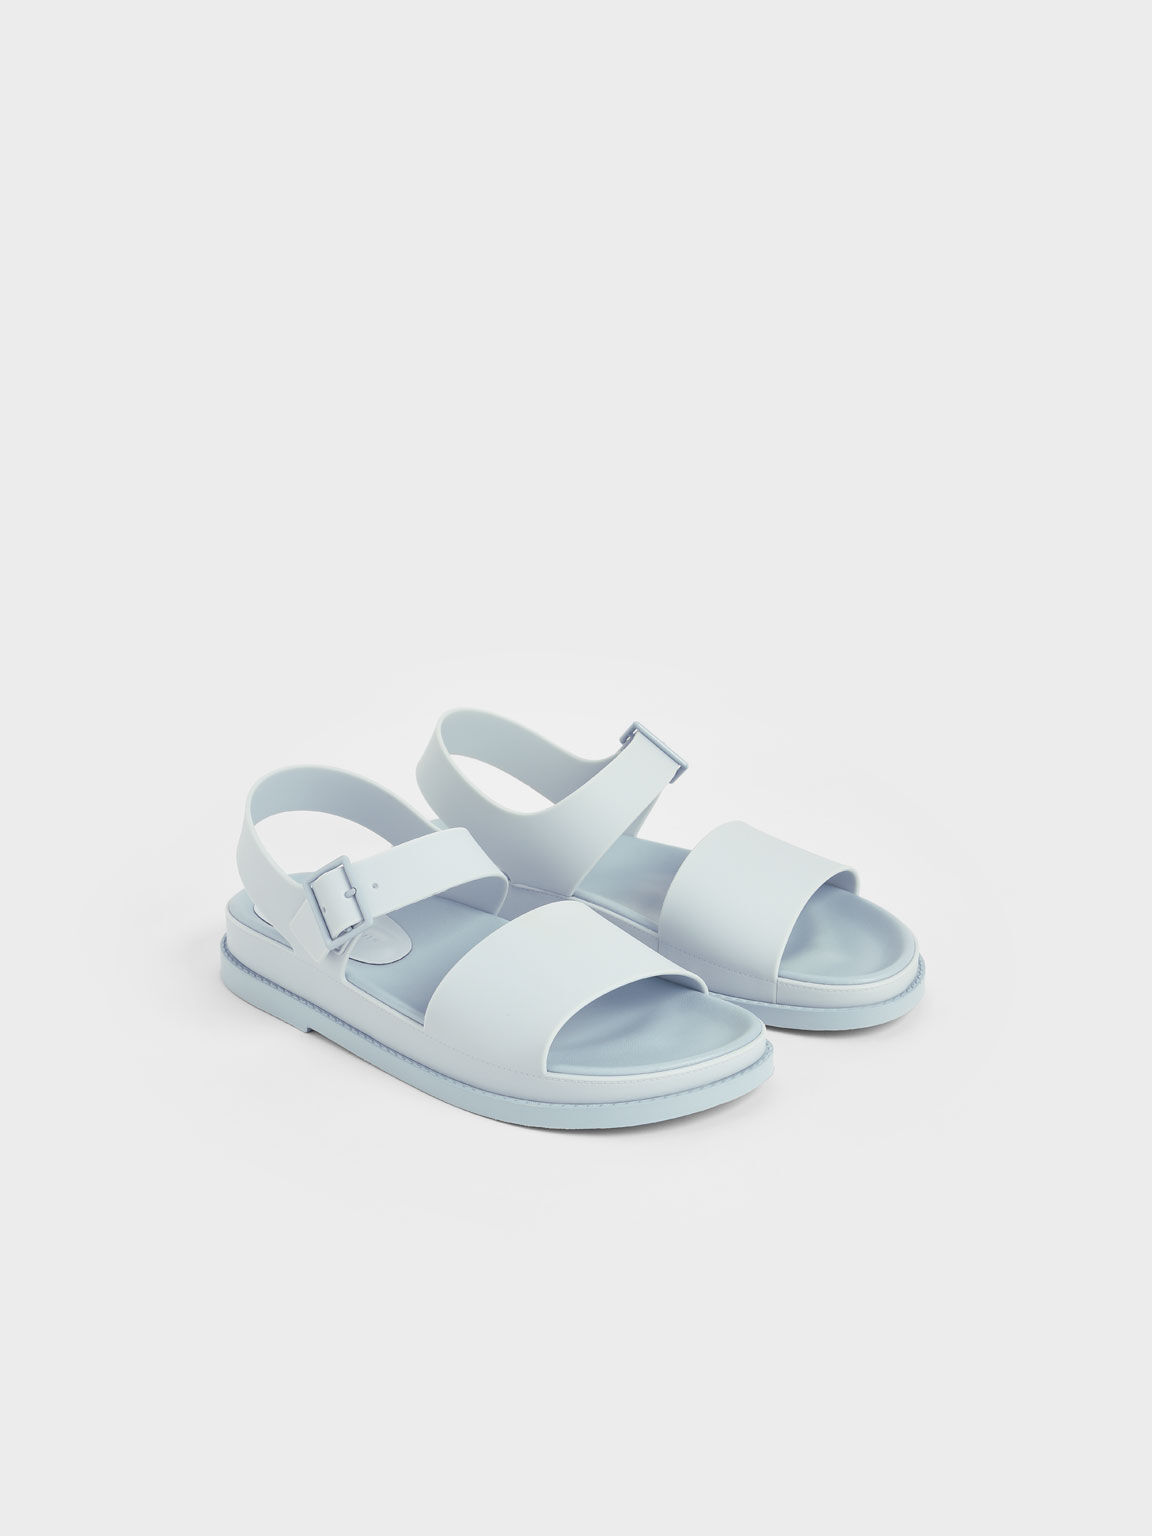 Buckle Strap Flatform Sandals, Light Blue, hi-res